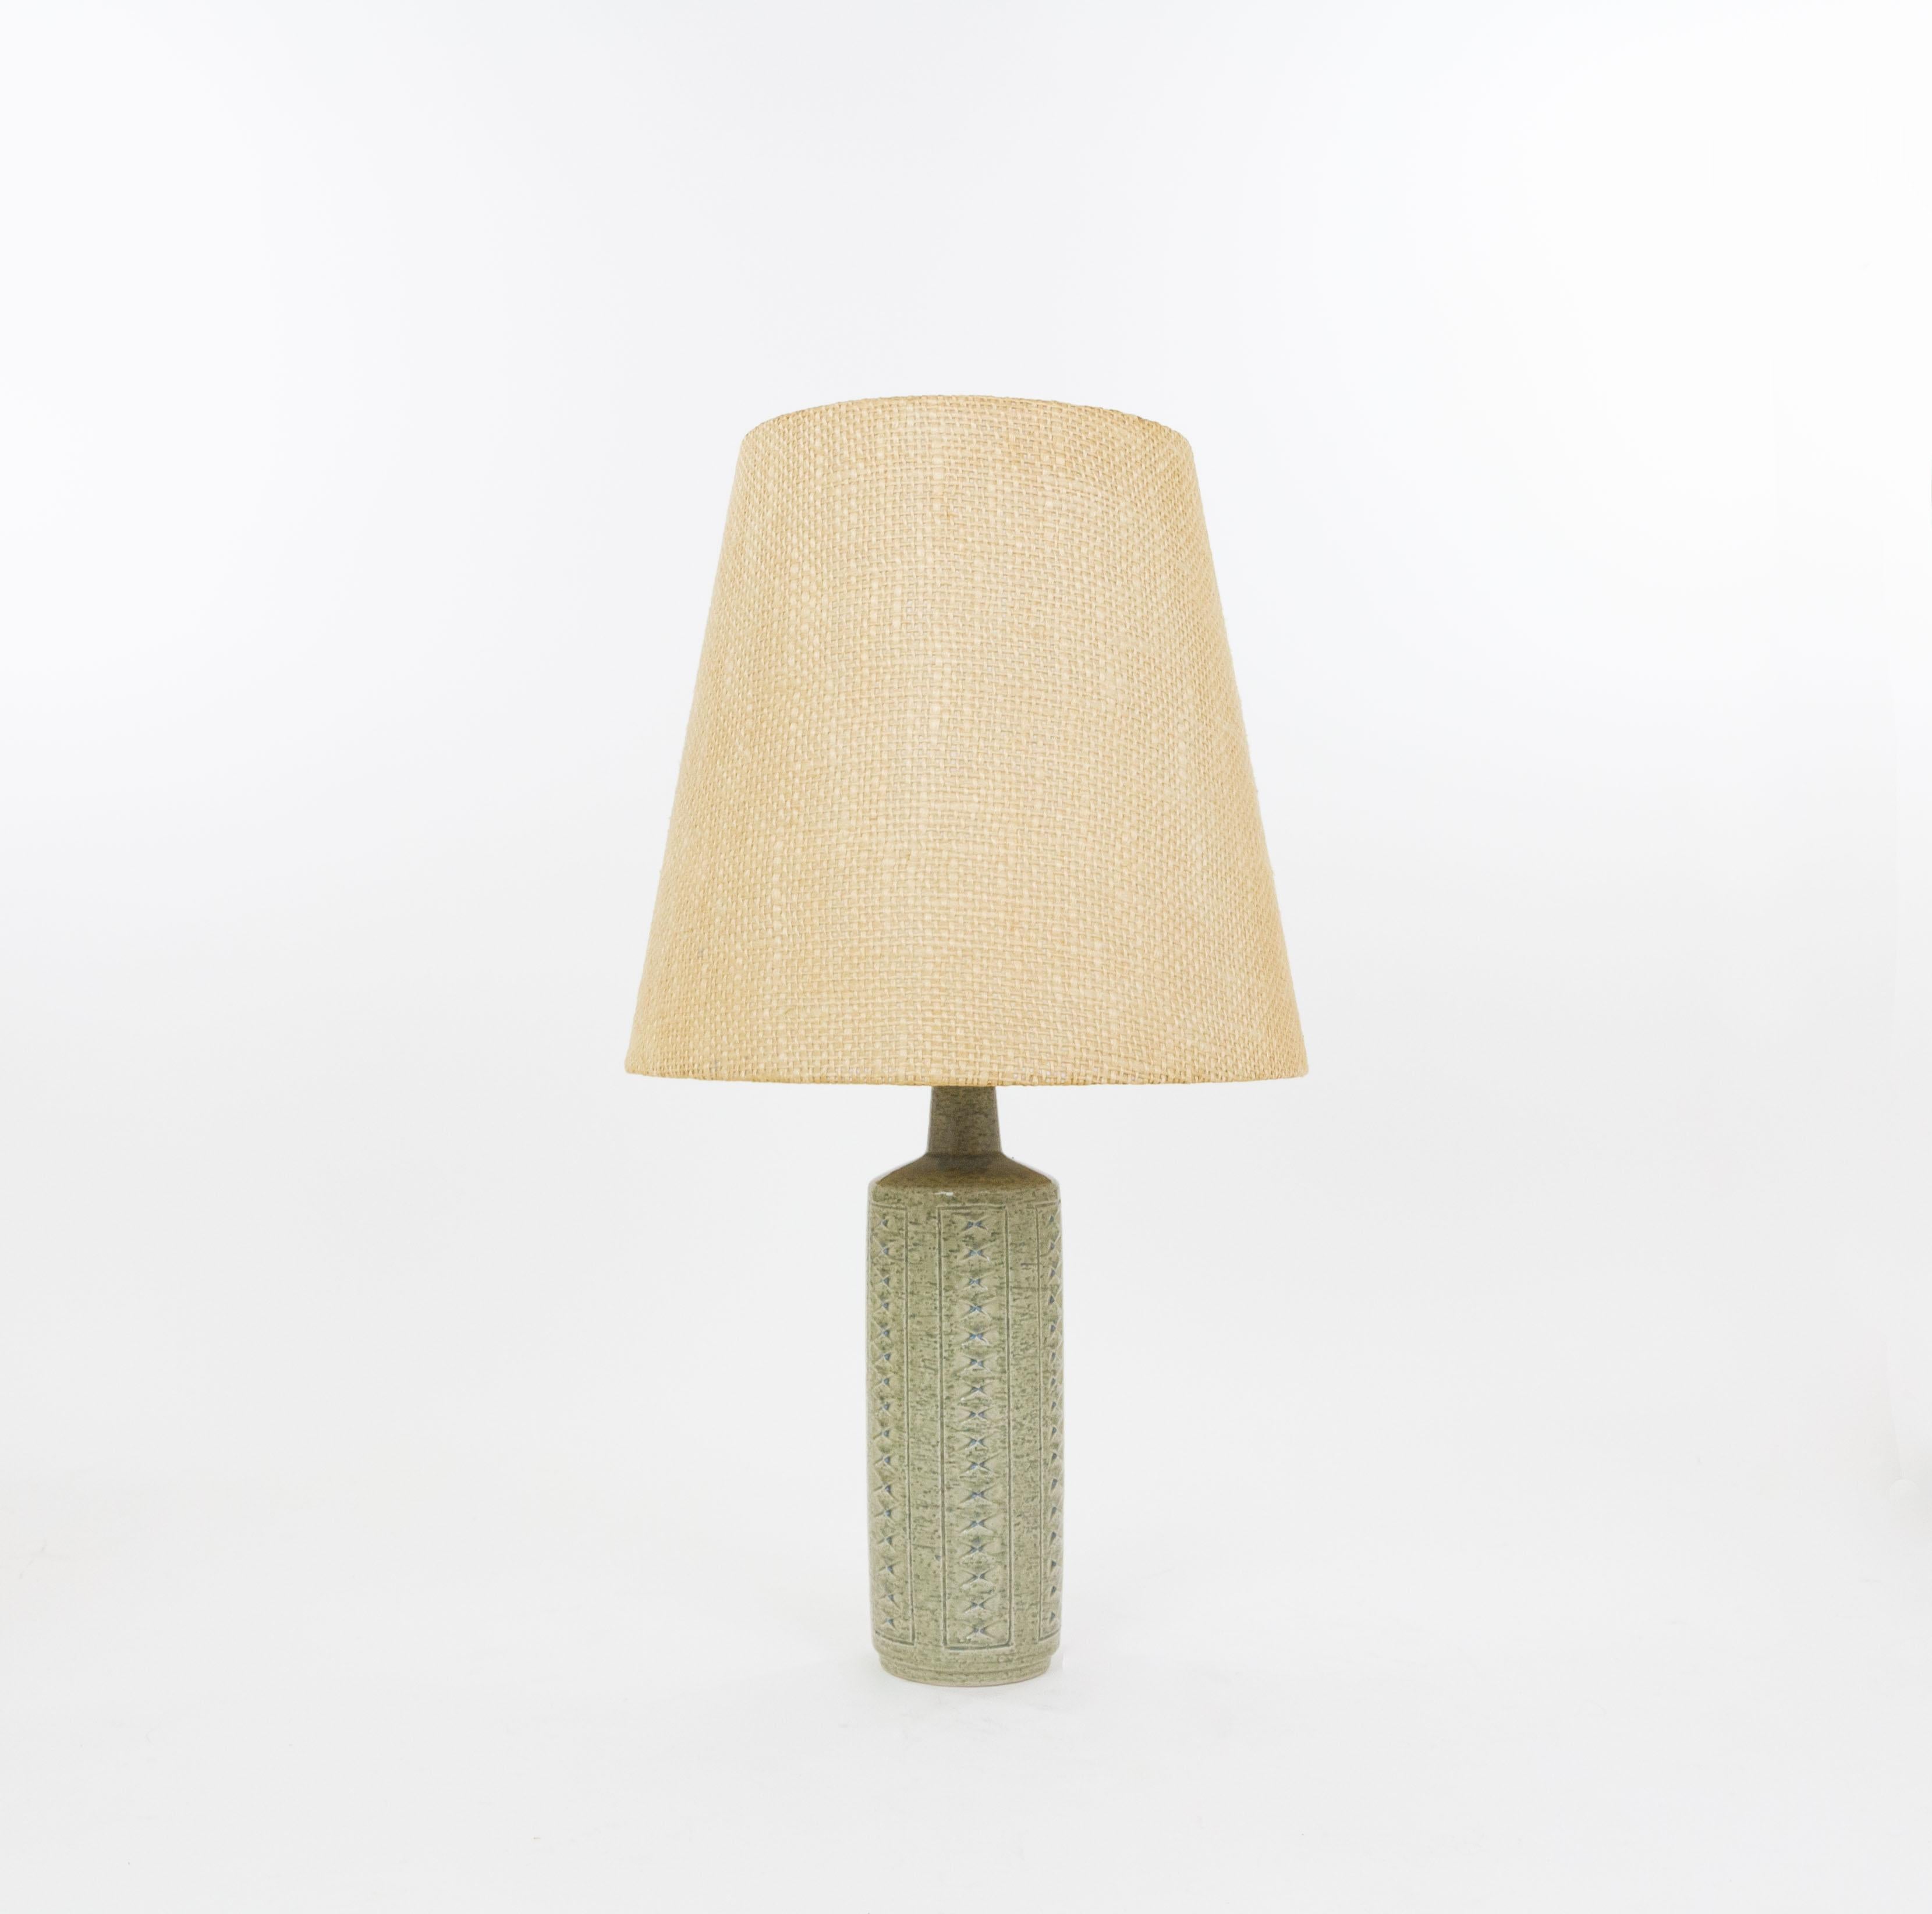 Lampe de table modèle DL/27 réalisée par Annelise et Per Linnemann-Schmidt pour Palshus dans les années 1960. La couleur de la base décorée à la main est le vert de mer. Il présente des motifs impressionnés.

La lampe est livrée avec son support